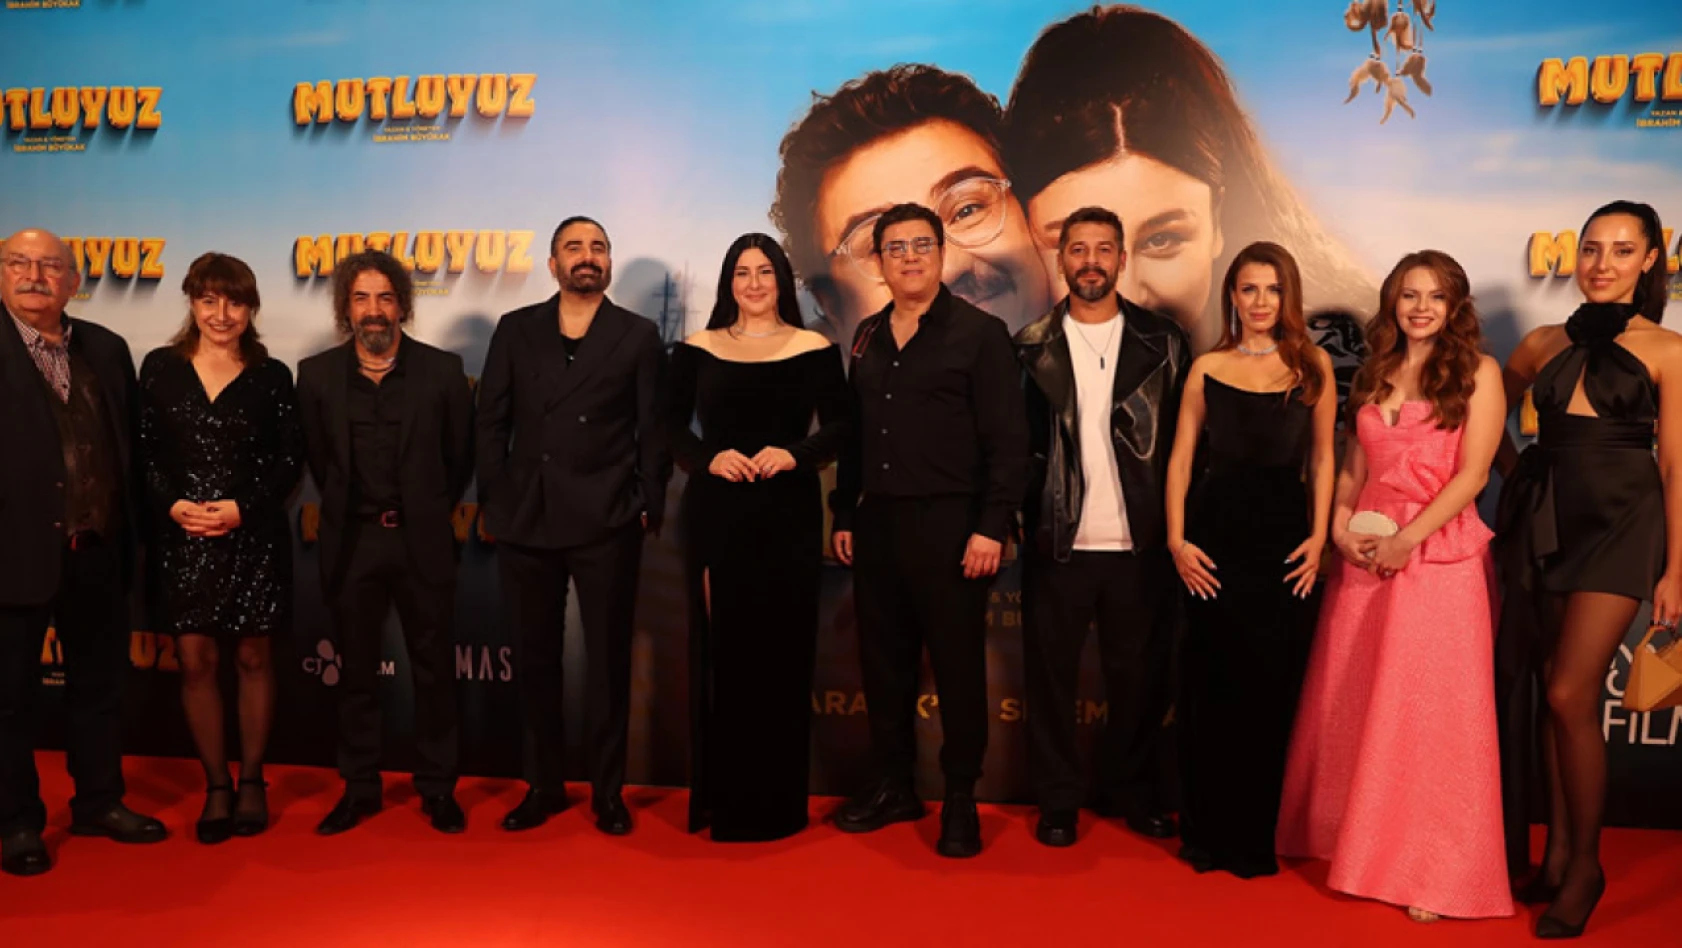 İbrahim Büyükak ve Yasemin Sakallıoğlu'nu buluşturan evlilik komedisi 'Mutluyuz' filminin galası gerçekleşti